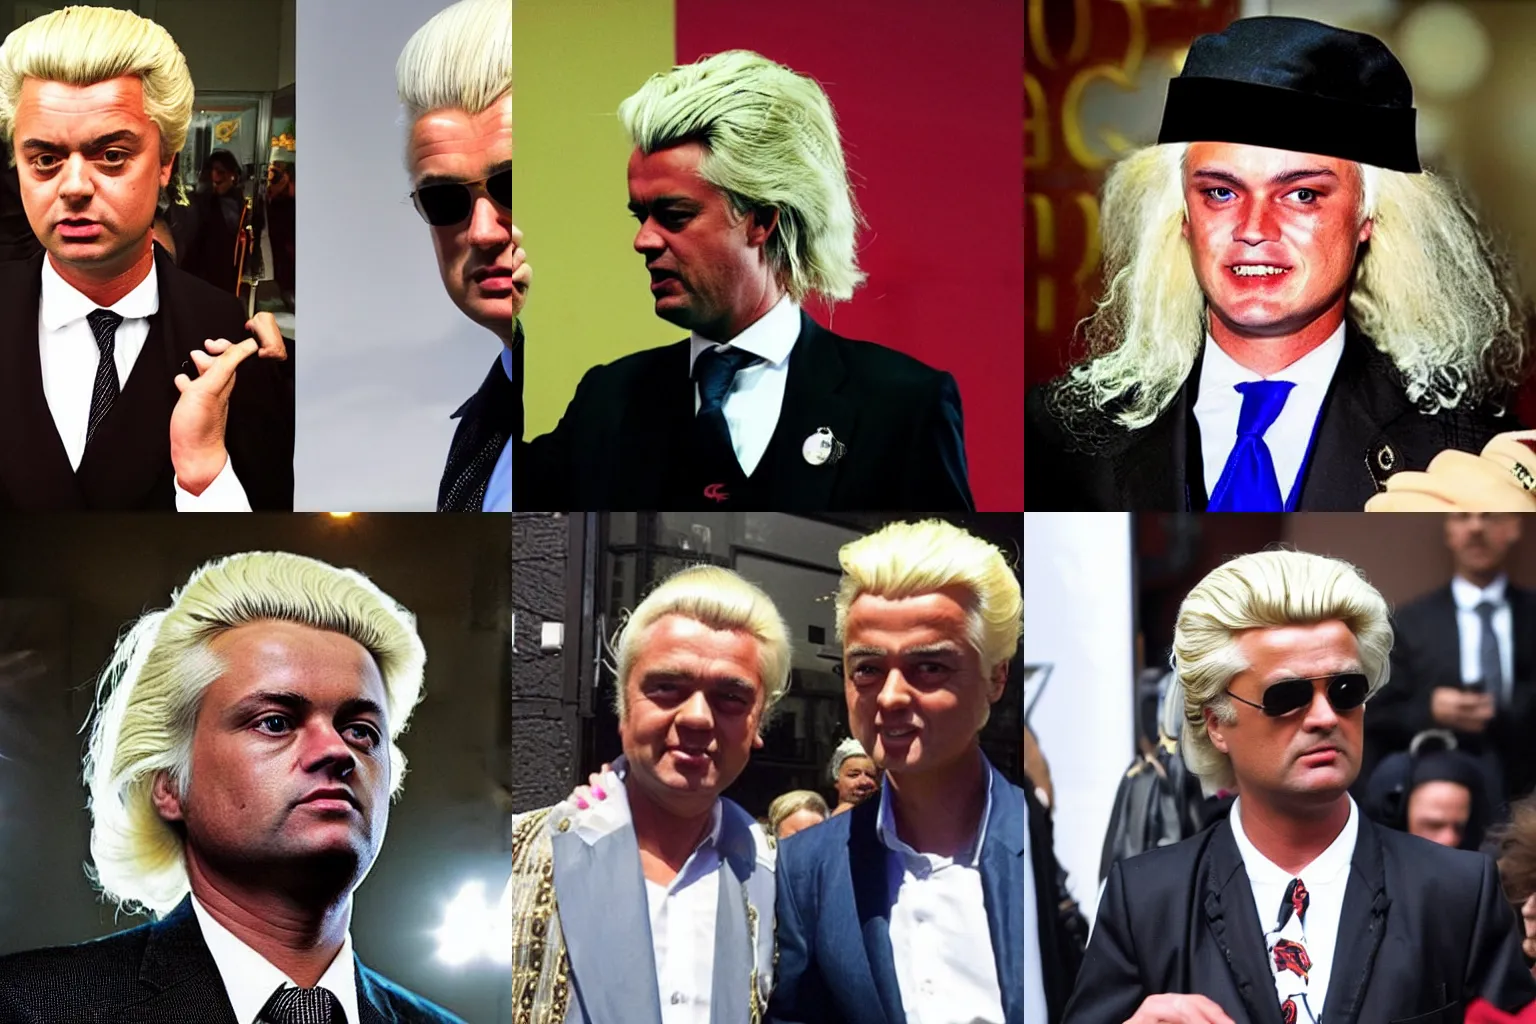 Prompt: Geert Wilders dressed as a pimp